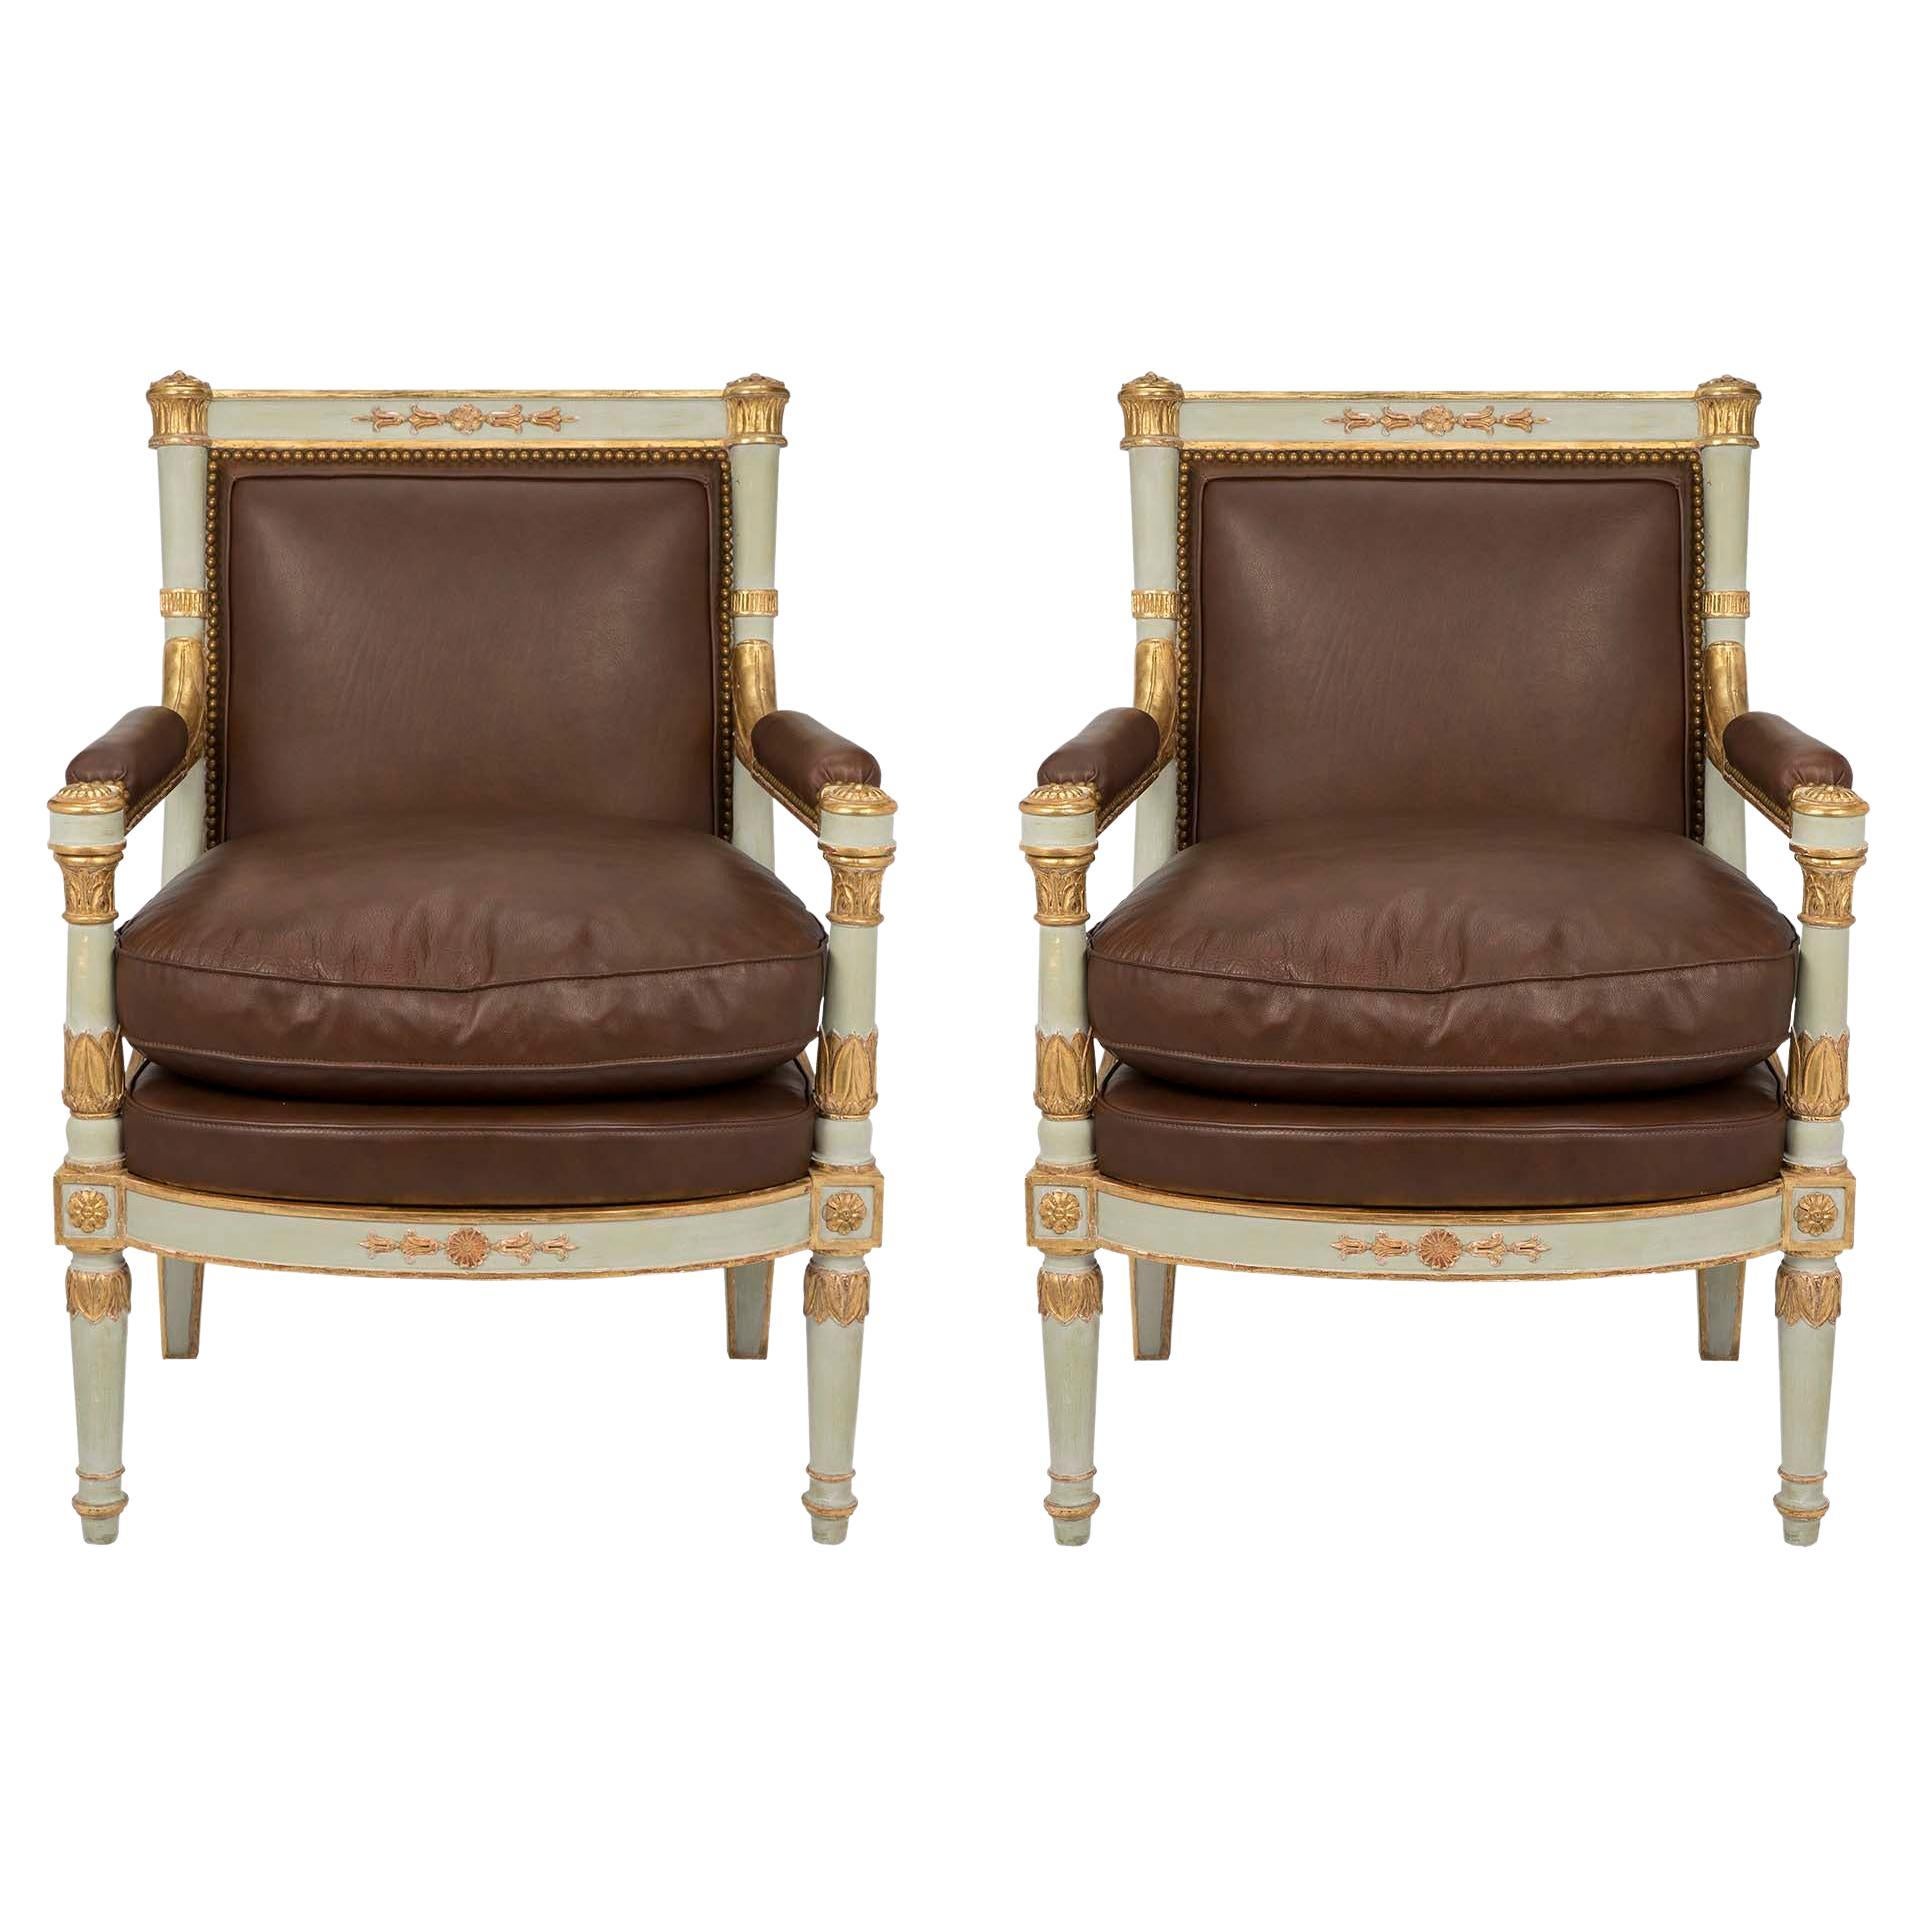 Paar italienische Sessel im neoklassizistischen Stil des frühen 19. Jahrhunderts